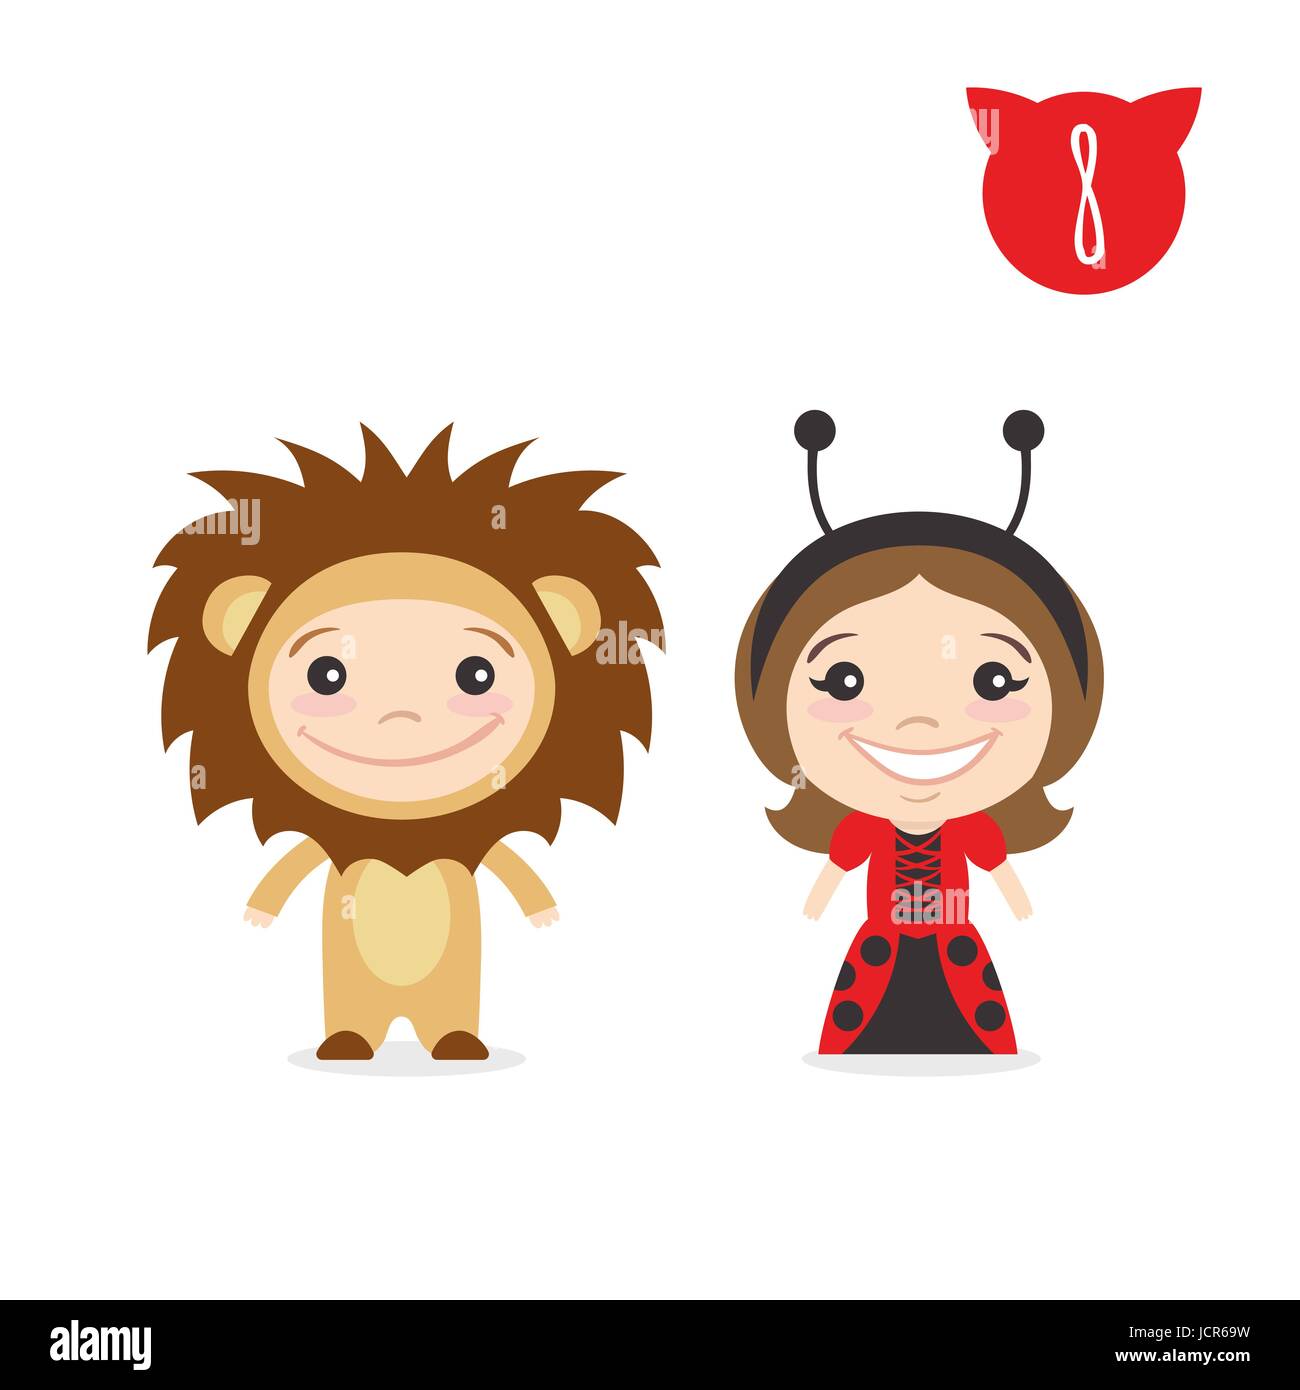 Illustrazione vettoriale delle due felice simpatici personaggi per bambini. Ragazzo in Lion costume e una ragazza in costume coccinella. Illustrazione Vettoriale